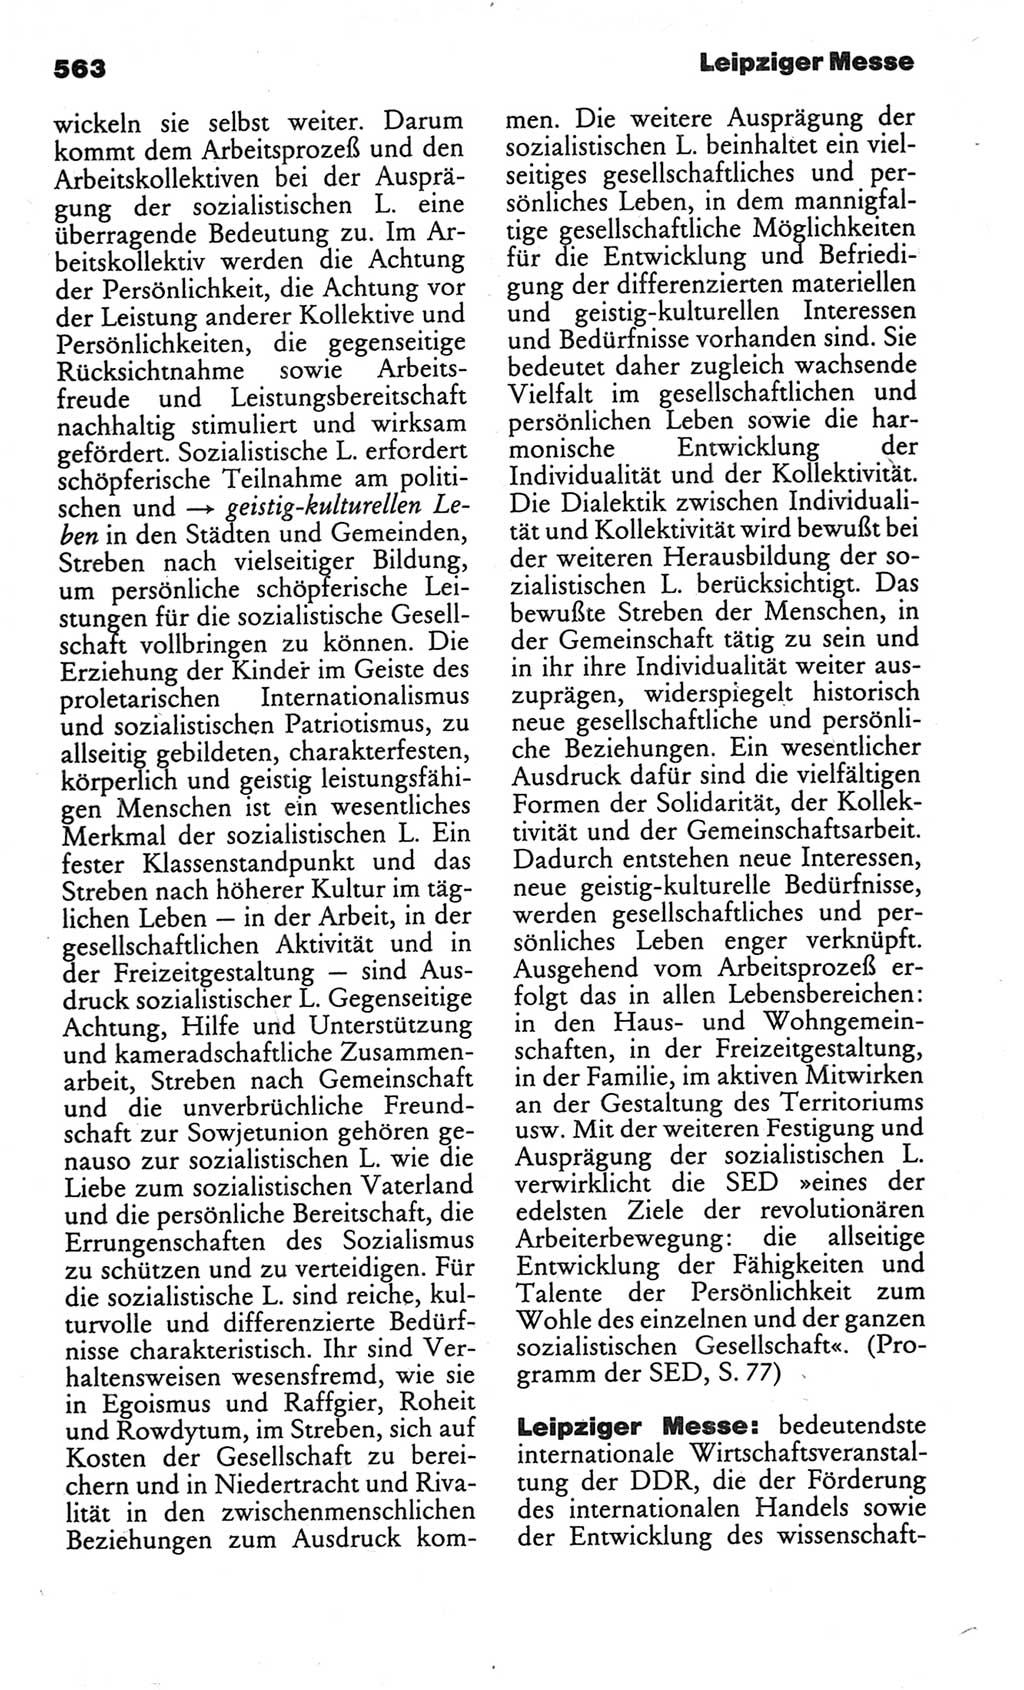 Kleines politisches Wörterbuch [Deutsche Demokratische Republik (DDR)] 1986, Seite 563 (Kl. pol. Wb. DDR 1986, S. 563)